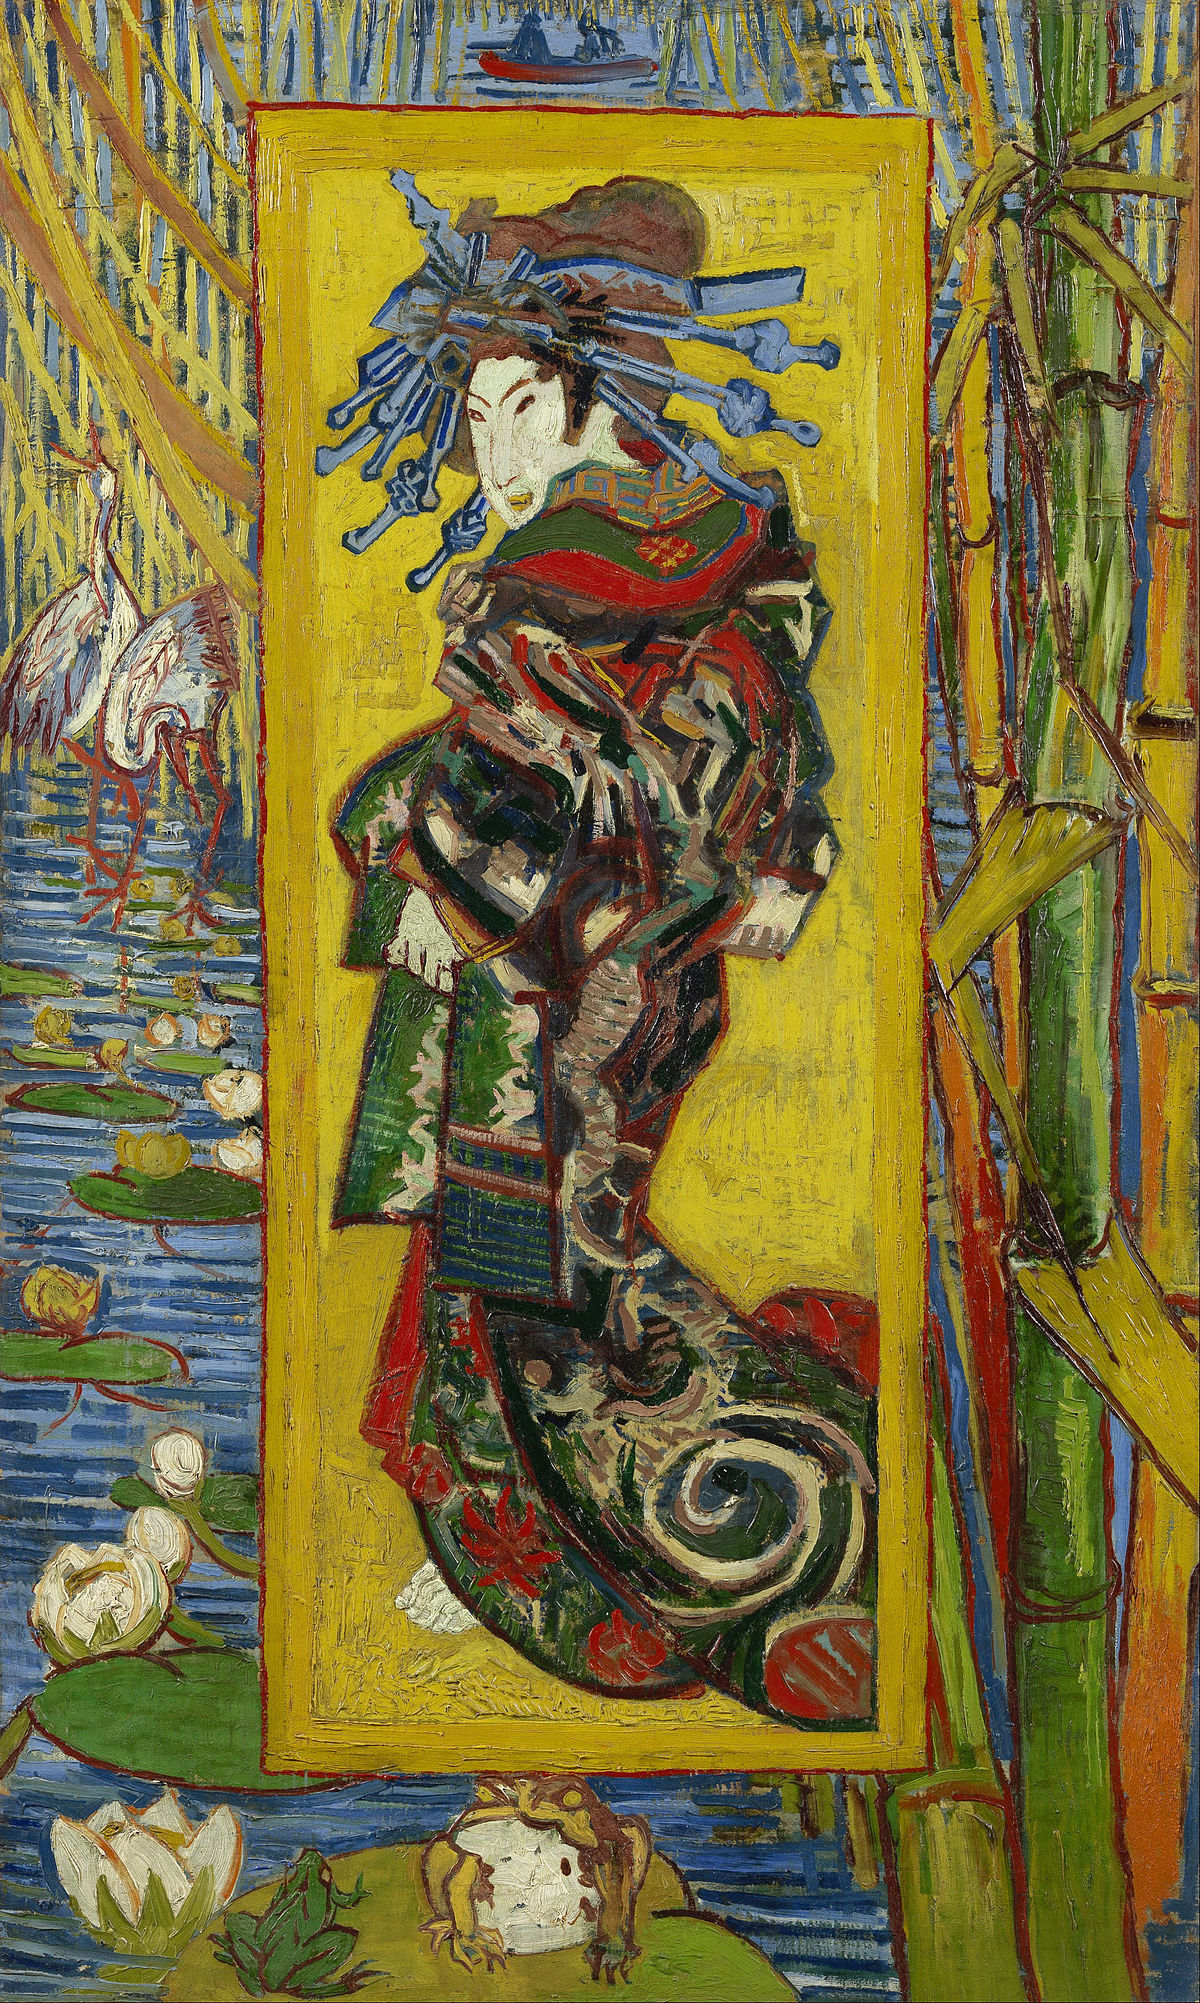 Van Gogh Museum Courtesan after Eisen